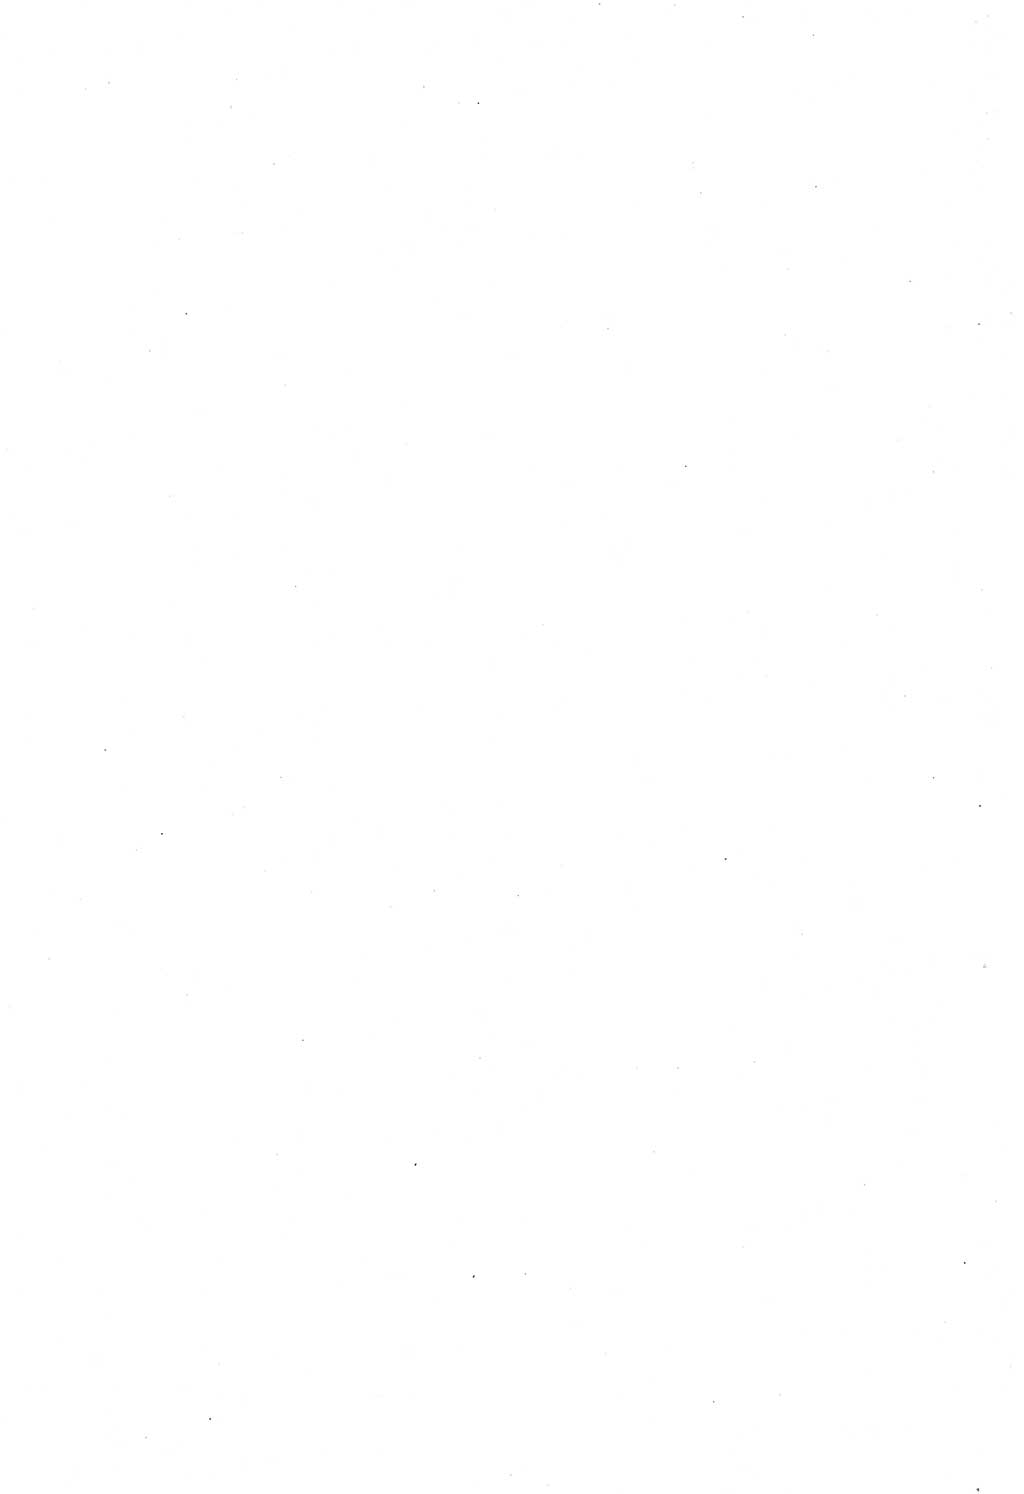 Strafgesetzbuch (StGB) und andere Strafgesetze [Deutsche Demokratische Republik (DDR)] 1958, Seite 394 (StGB Strafges. DDR 1958, S. 394)